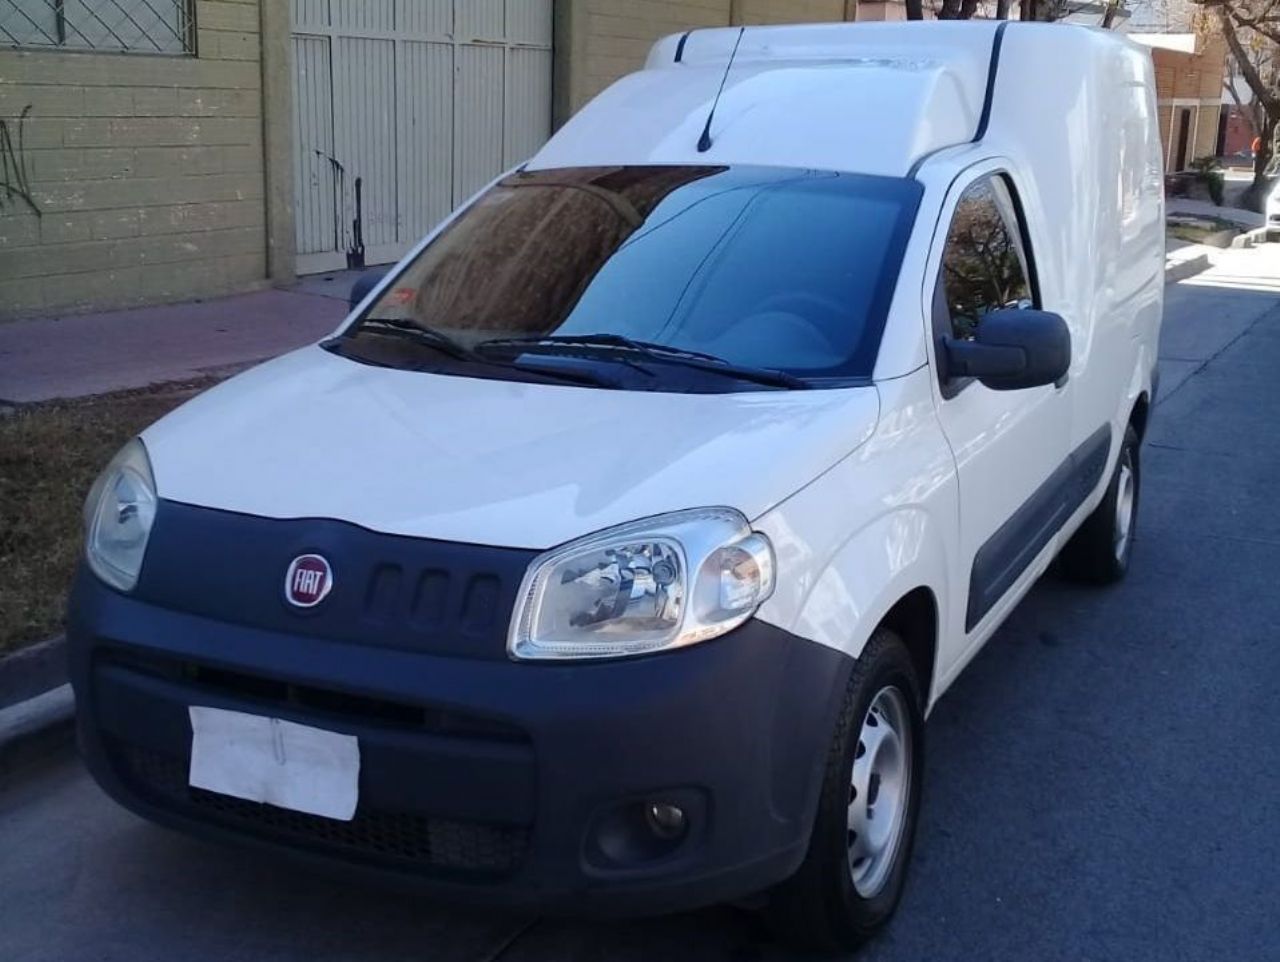 Fiat Fiorino Usada en Mendoza, deRuedas